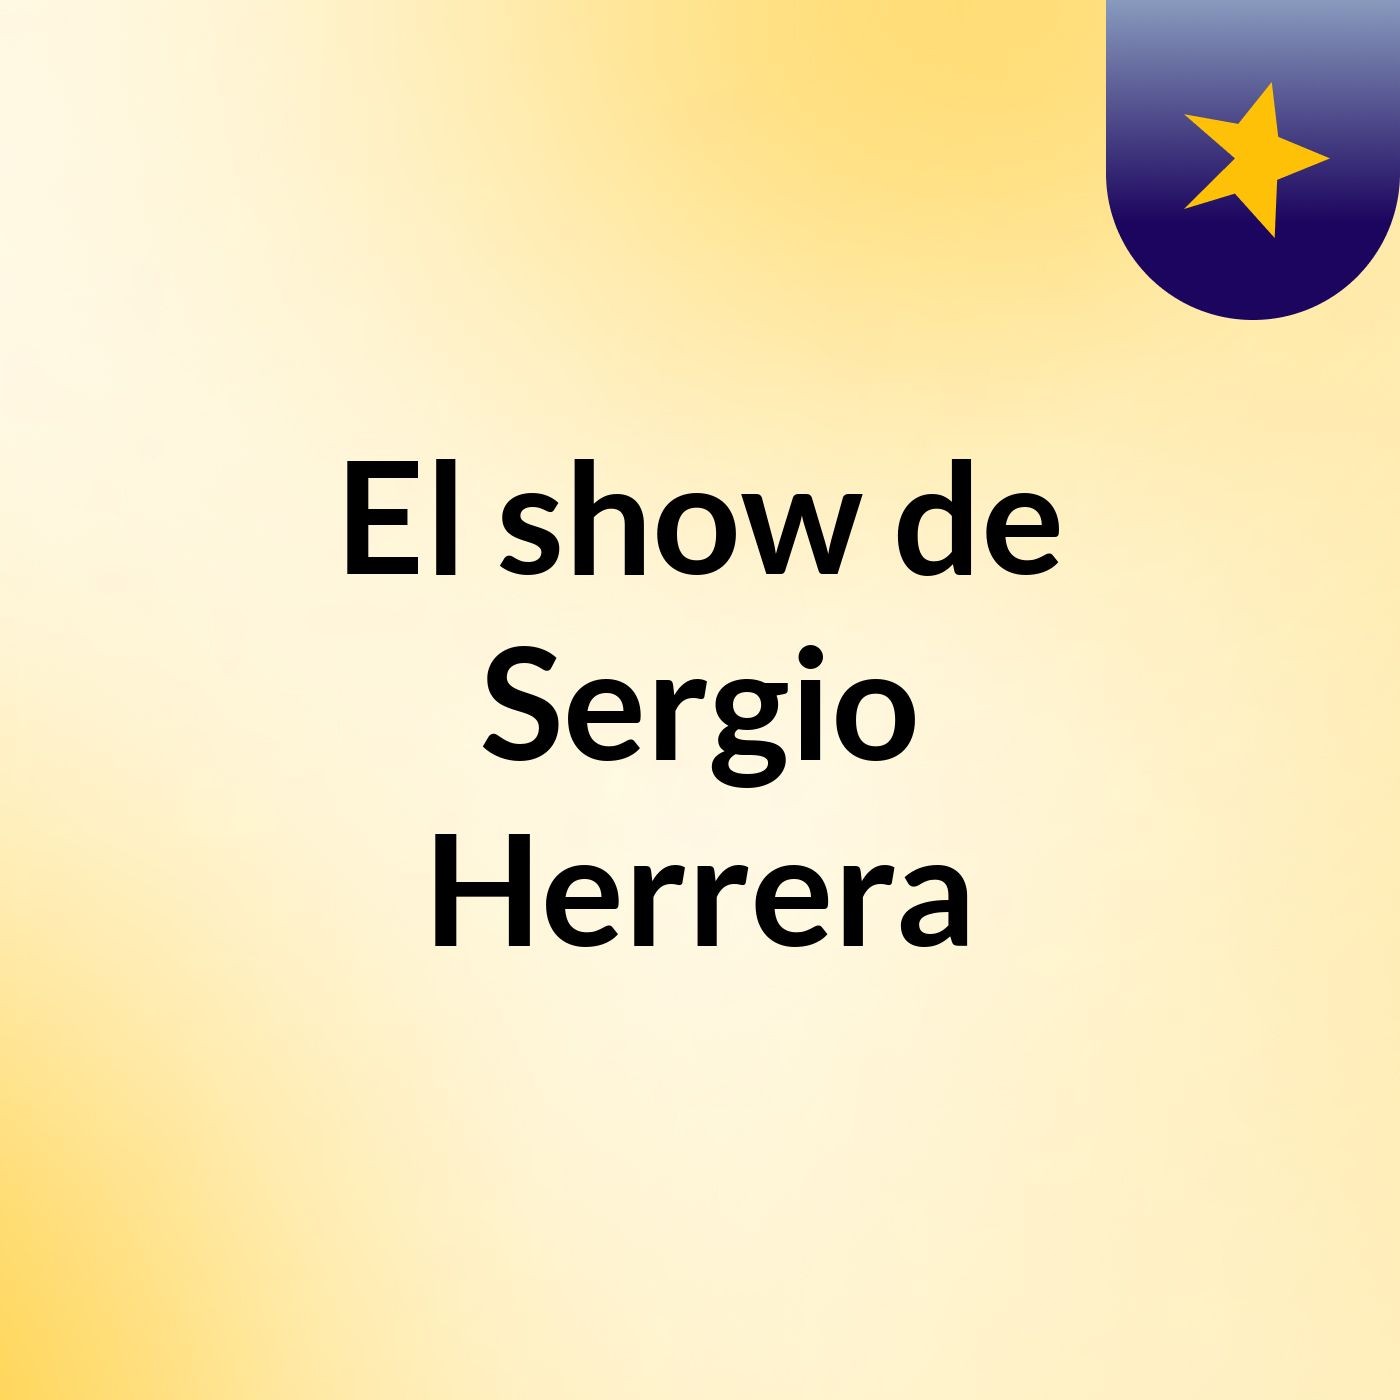 El show de Sergio Herrera